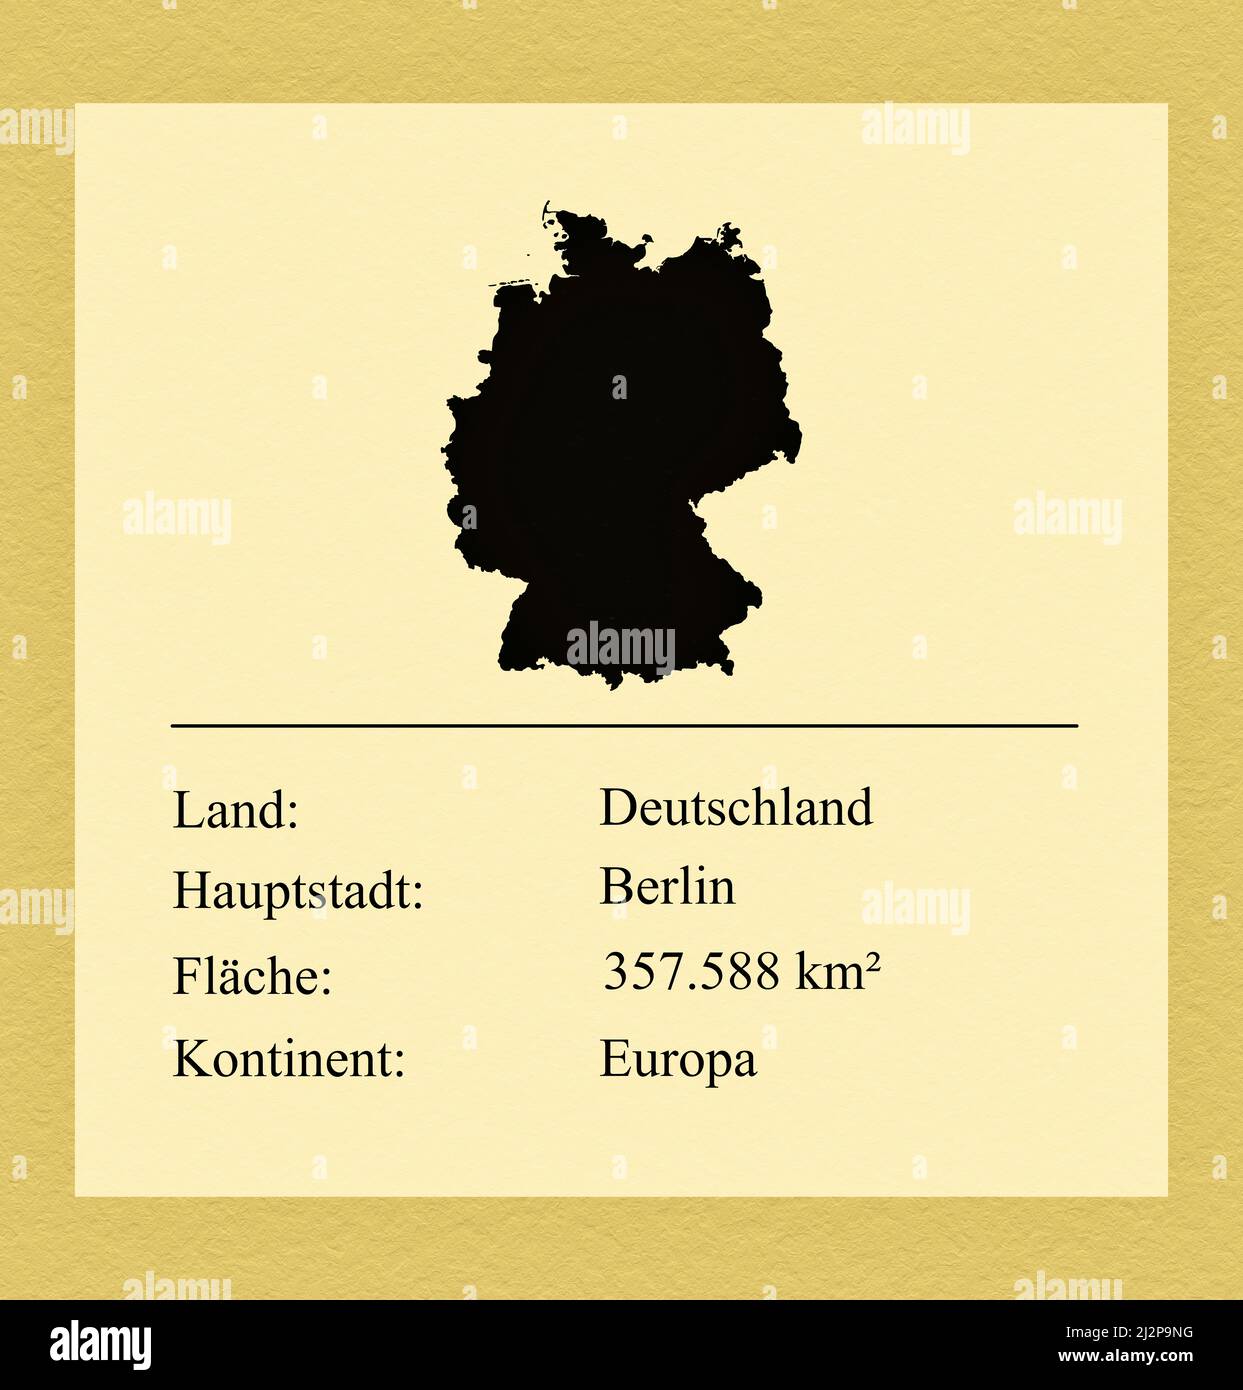 Umrisse des Landes Deutschland, darunter ein kleiner Steckbrief mit Ländernamen, Hauptstadt, Fläche und Kontinent Stockfoto